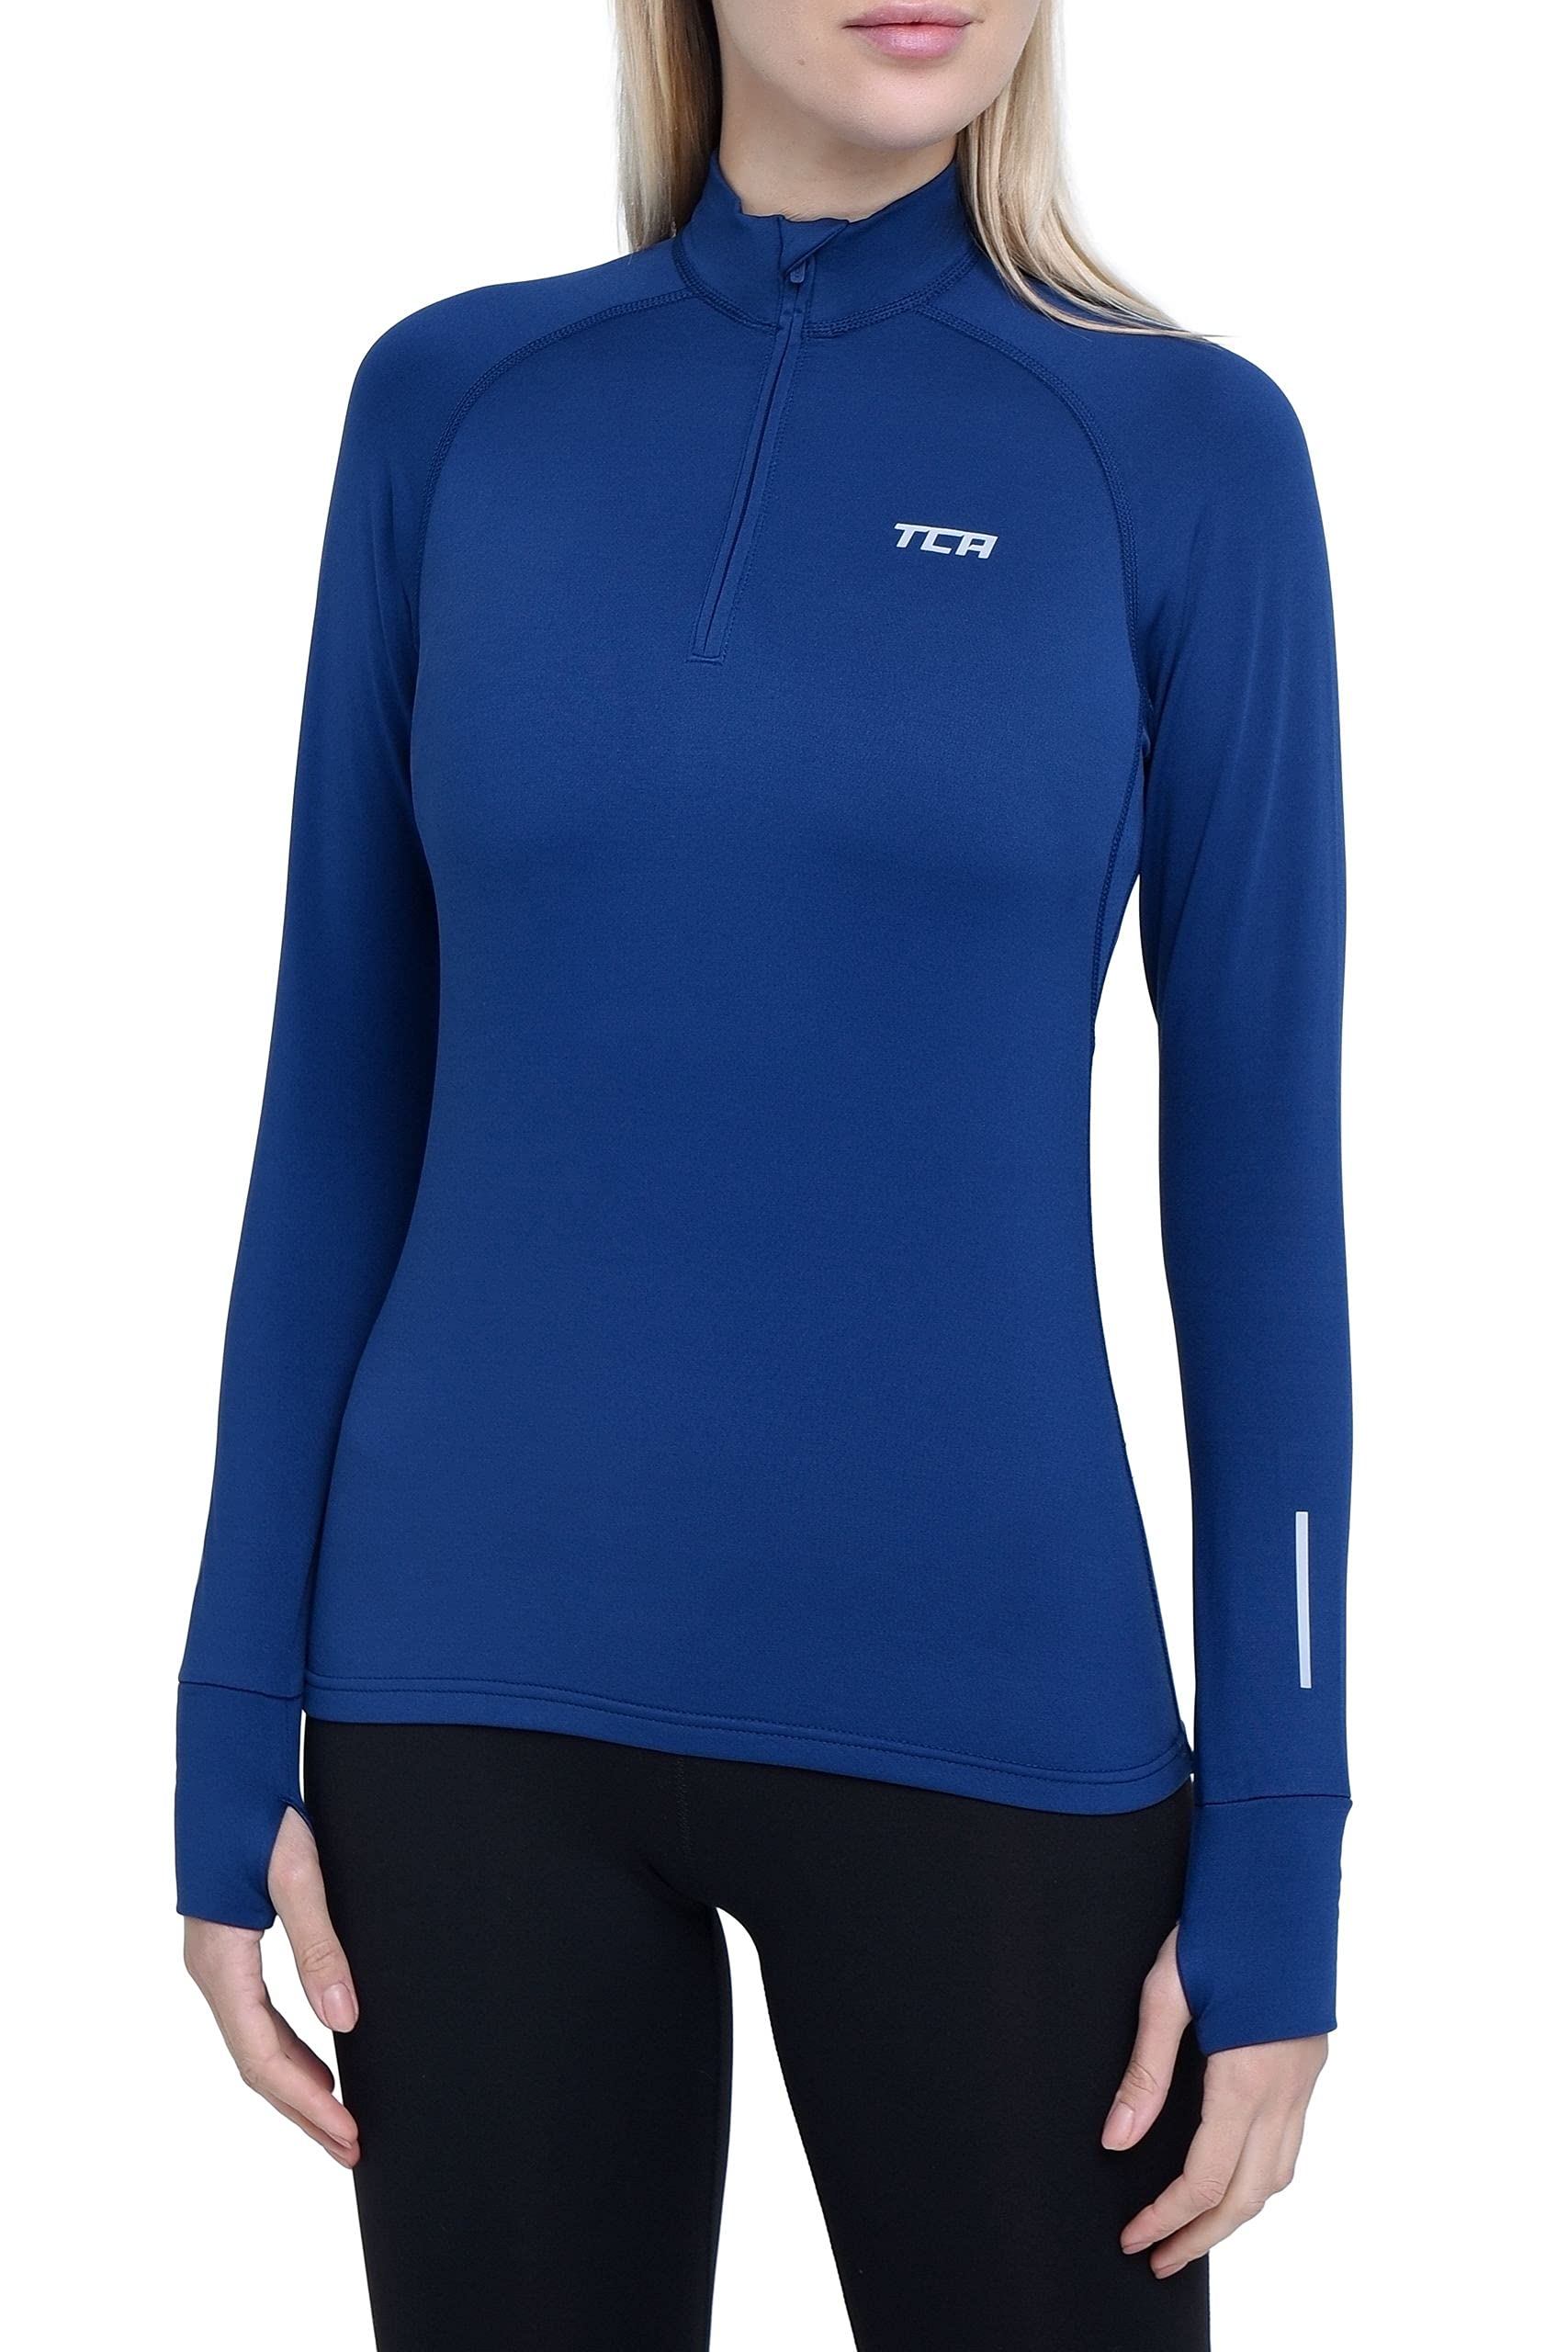 TCA Damen Winter Running Langarm Laufshirt mit Brustreißverschluss - Blau, XL